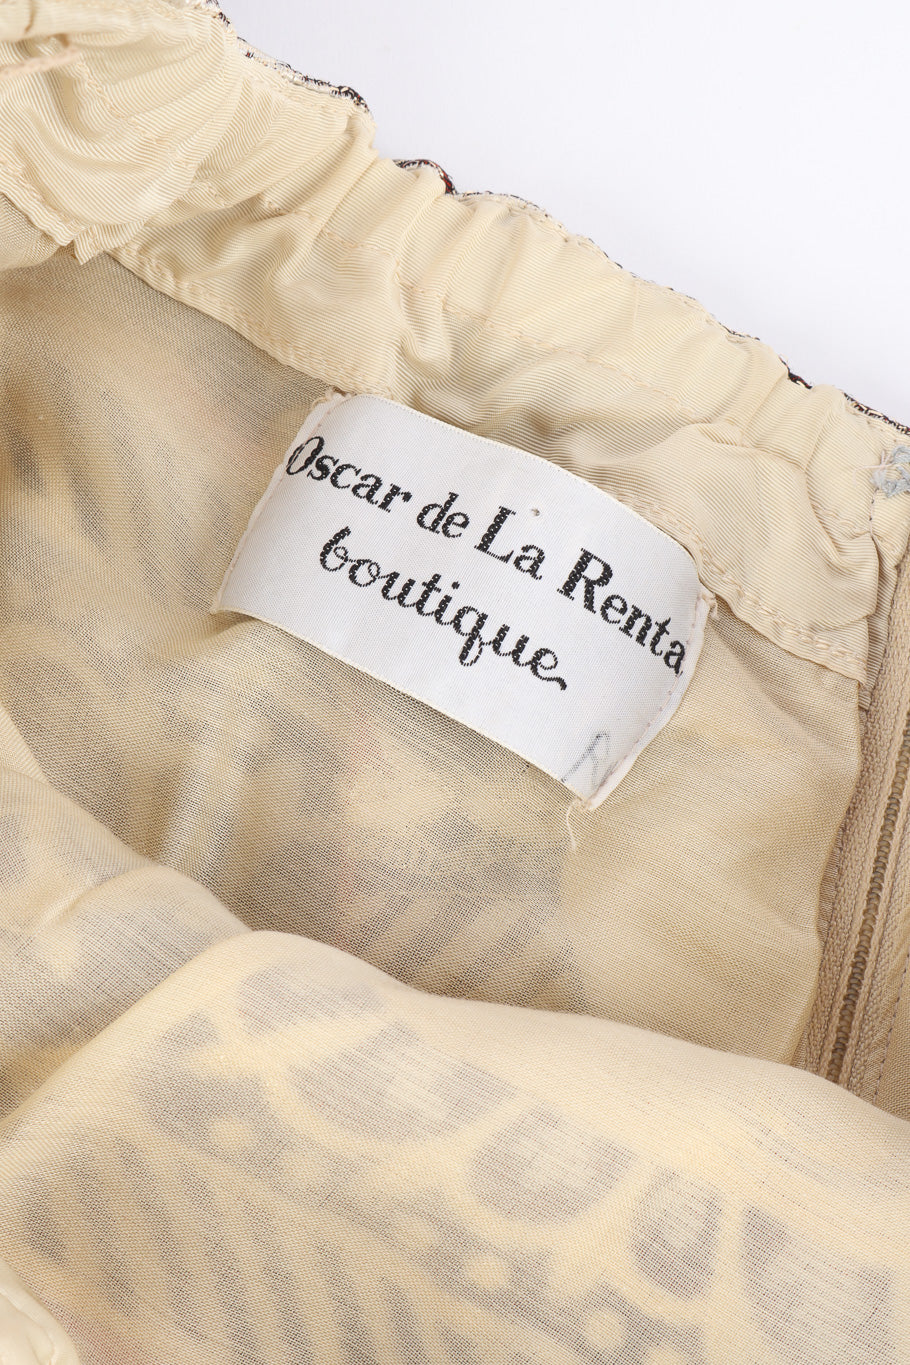 Gown by Oscar de La Renta label @recessla